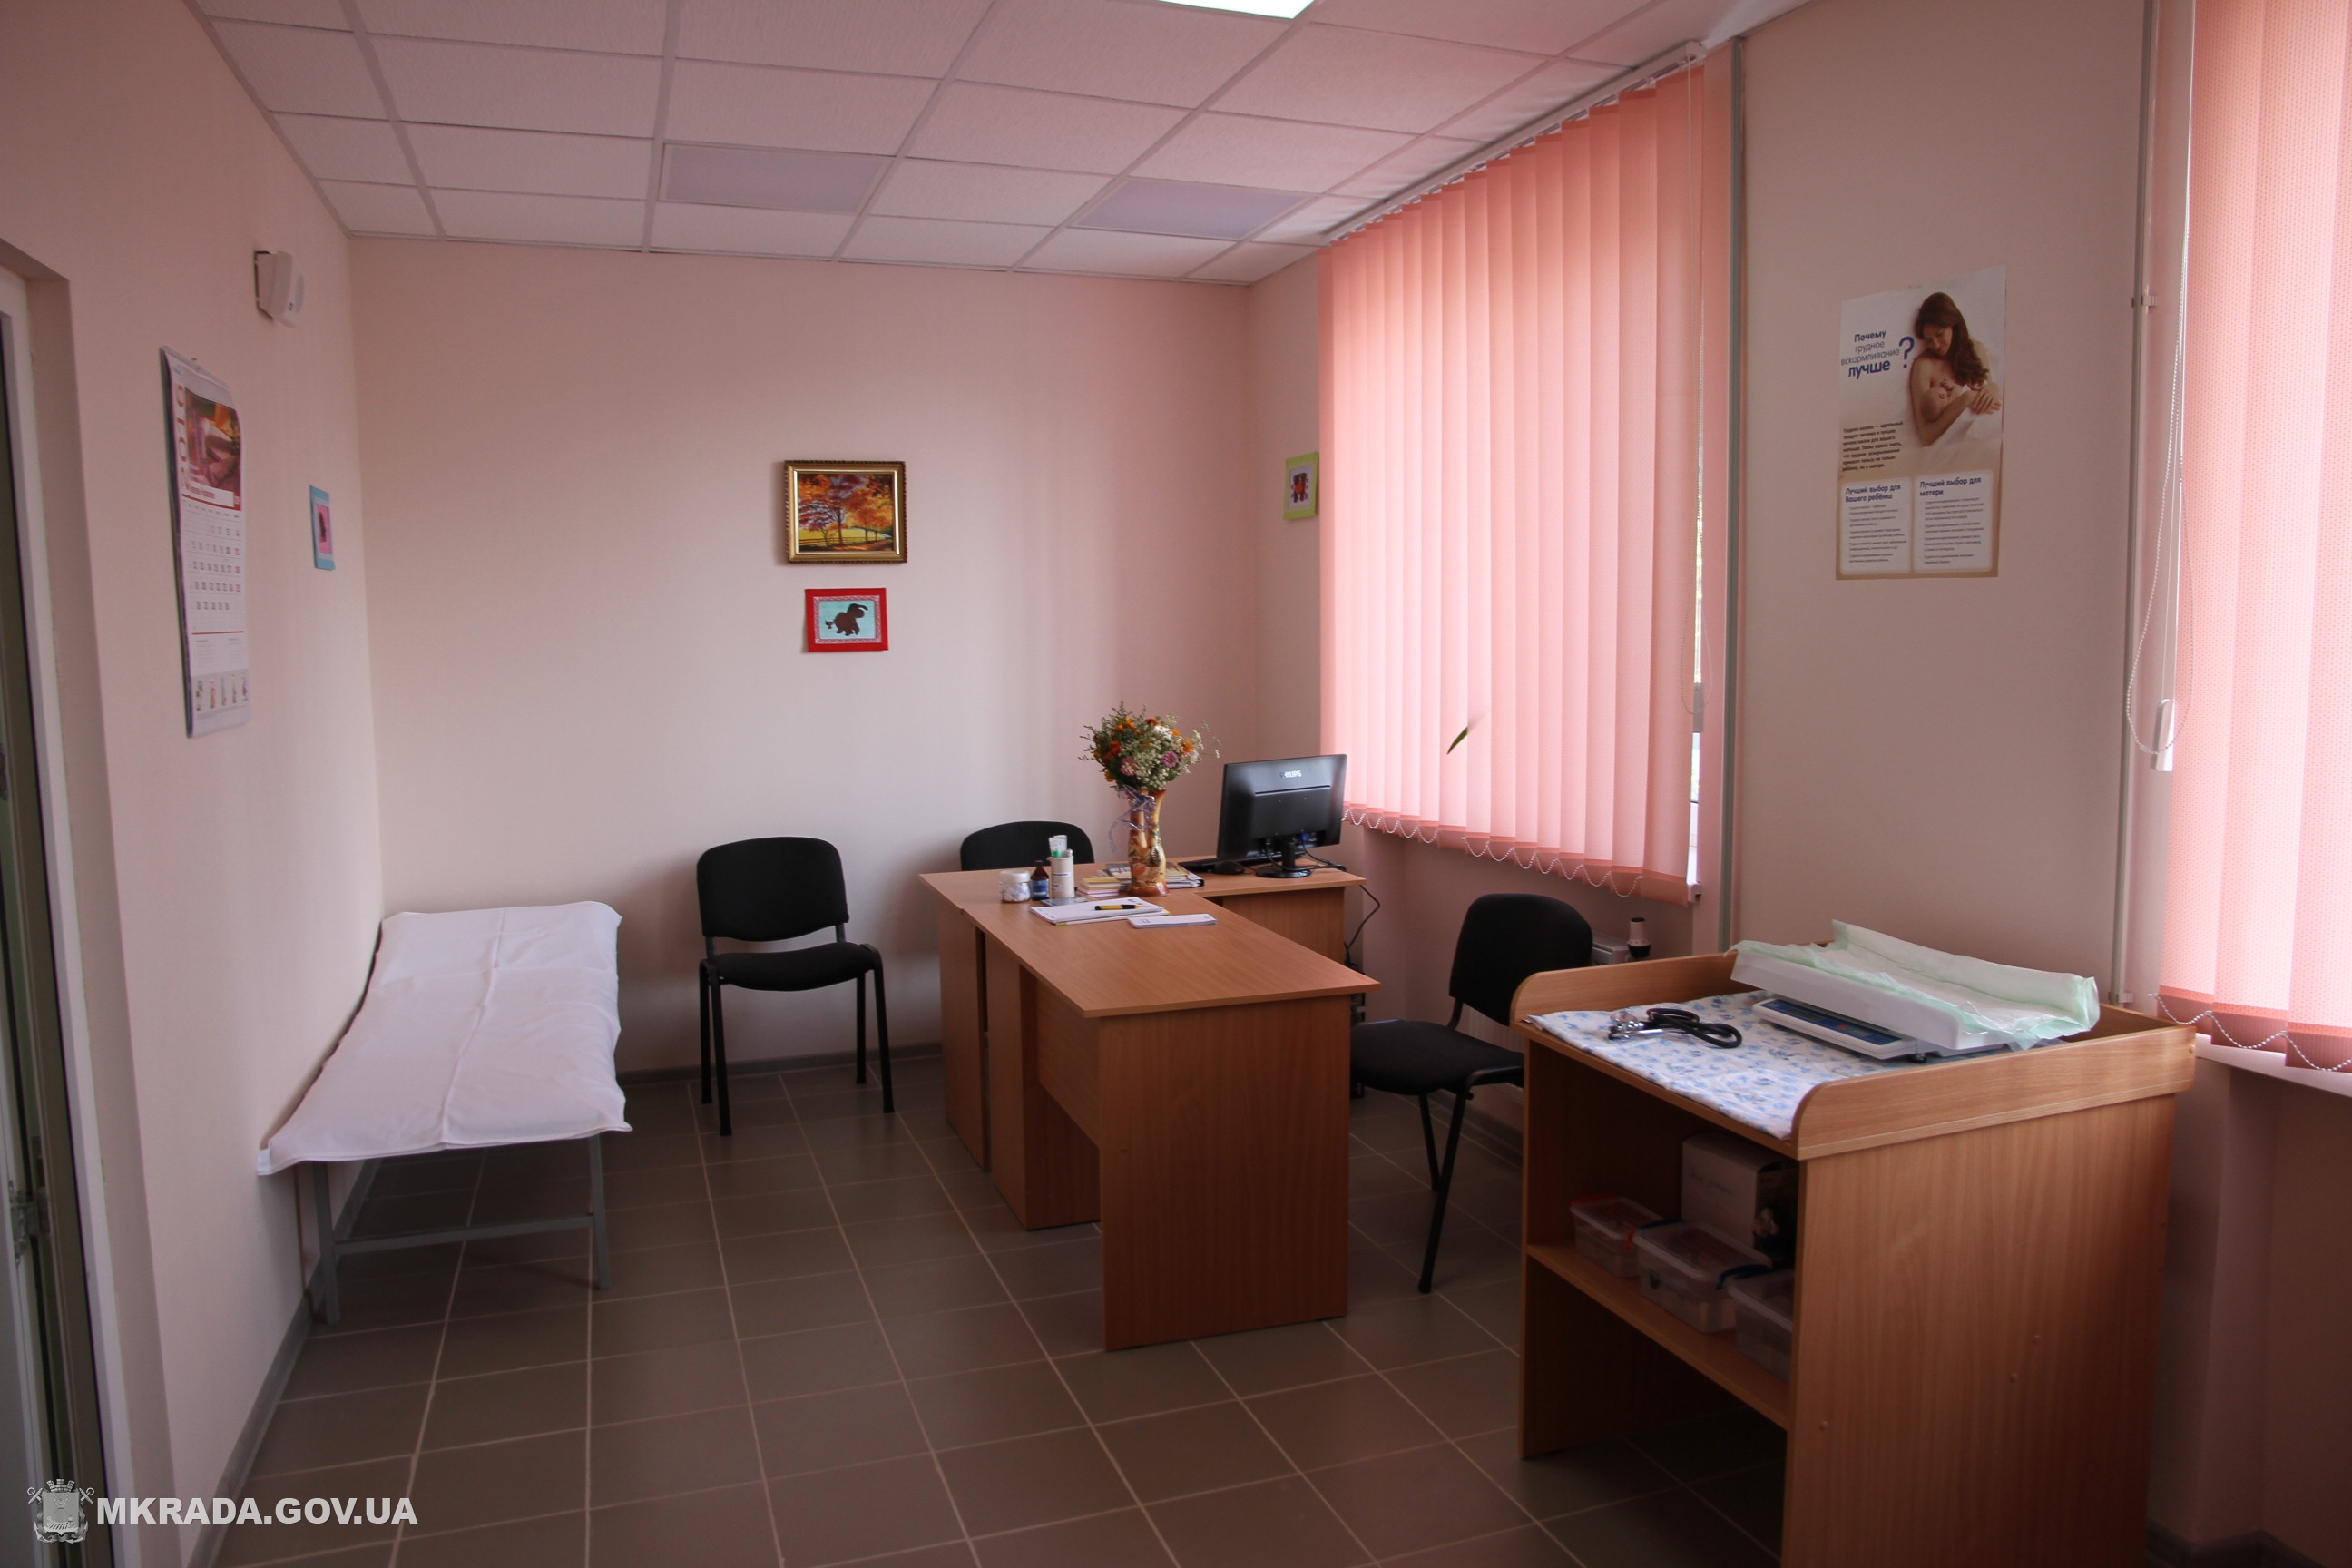 У Миколаєві розробляють електронні паспорти в новій амбулаторіїУ Миколаєві розробляють електронні паспорти в новій амбулаторії